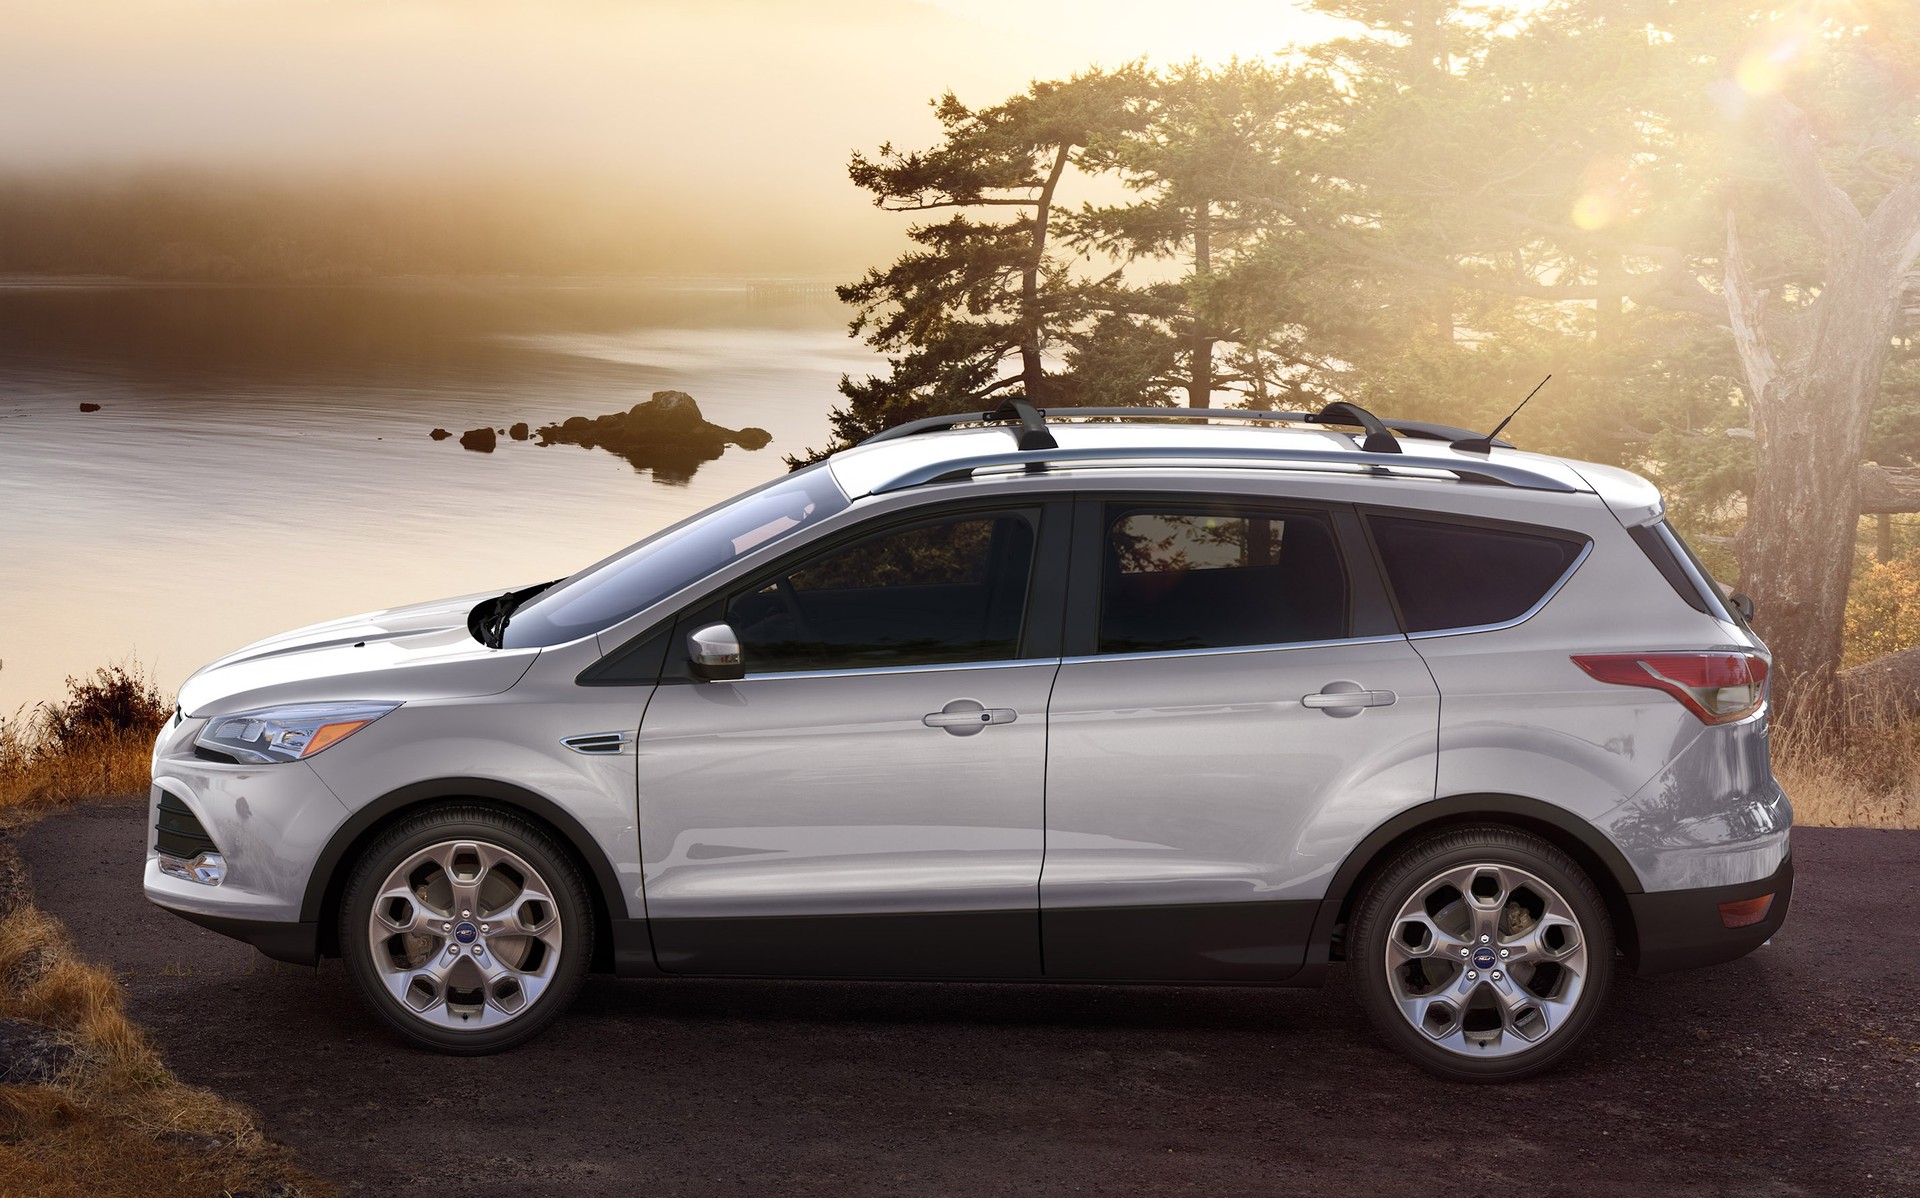 Ford Ranger XLS AT 2015 Qua Sử Dụng  XE CŨ GIÁ TỐT Trang chuyên kinh  doanh MuaBánTrao đổi Ký gửi xe ô tô cũ đã qua sử dụng giá tốt nhất